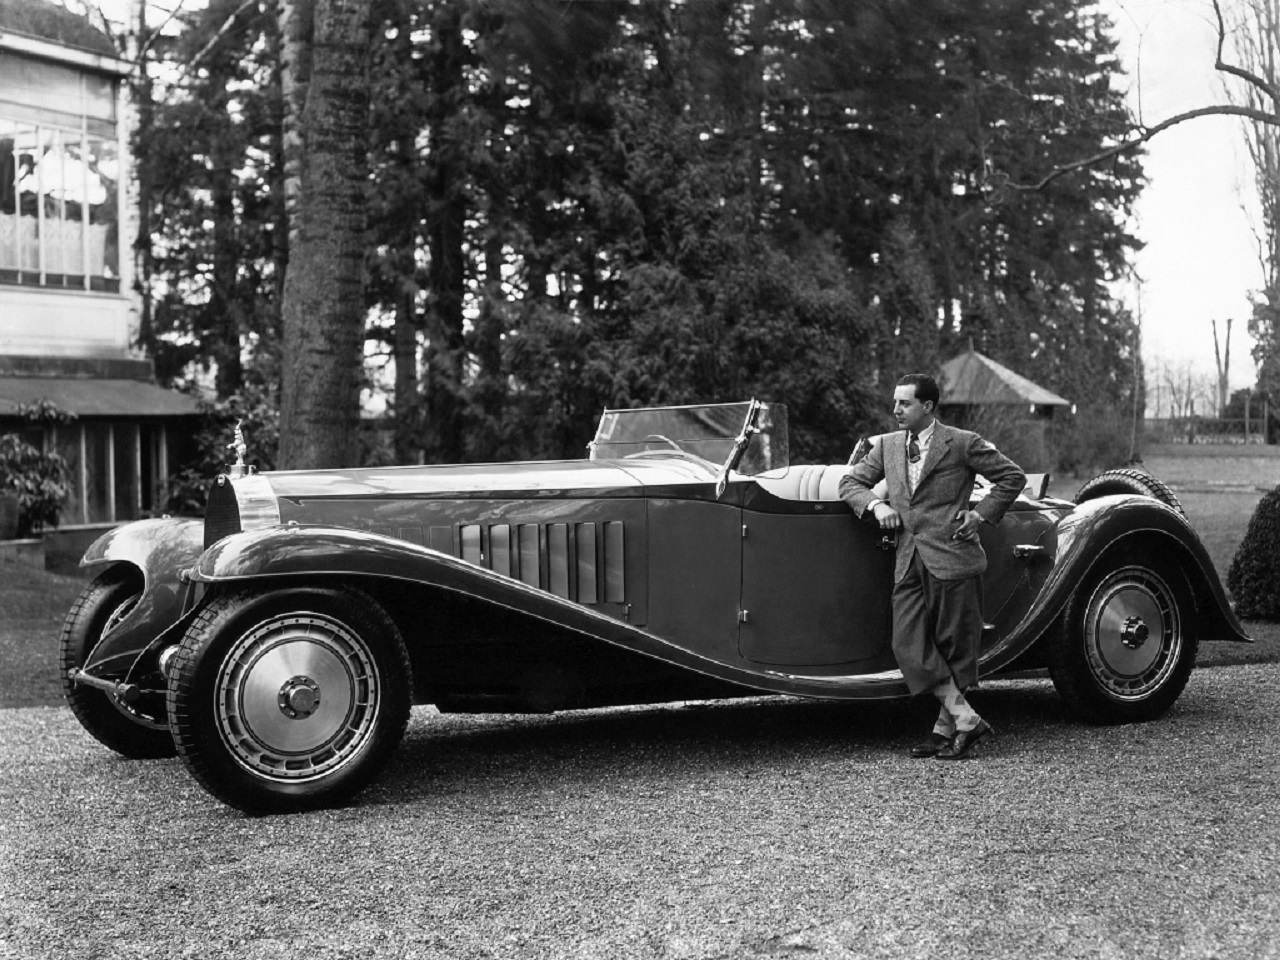 Mr. Bugatti